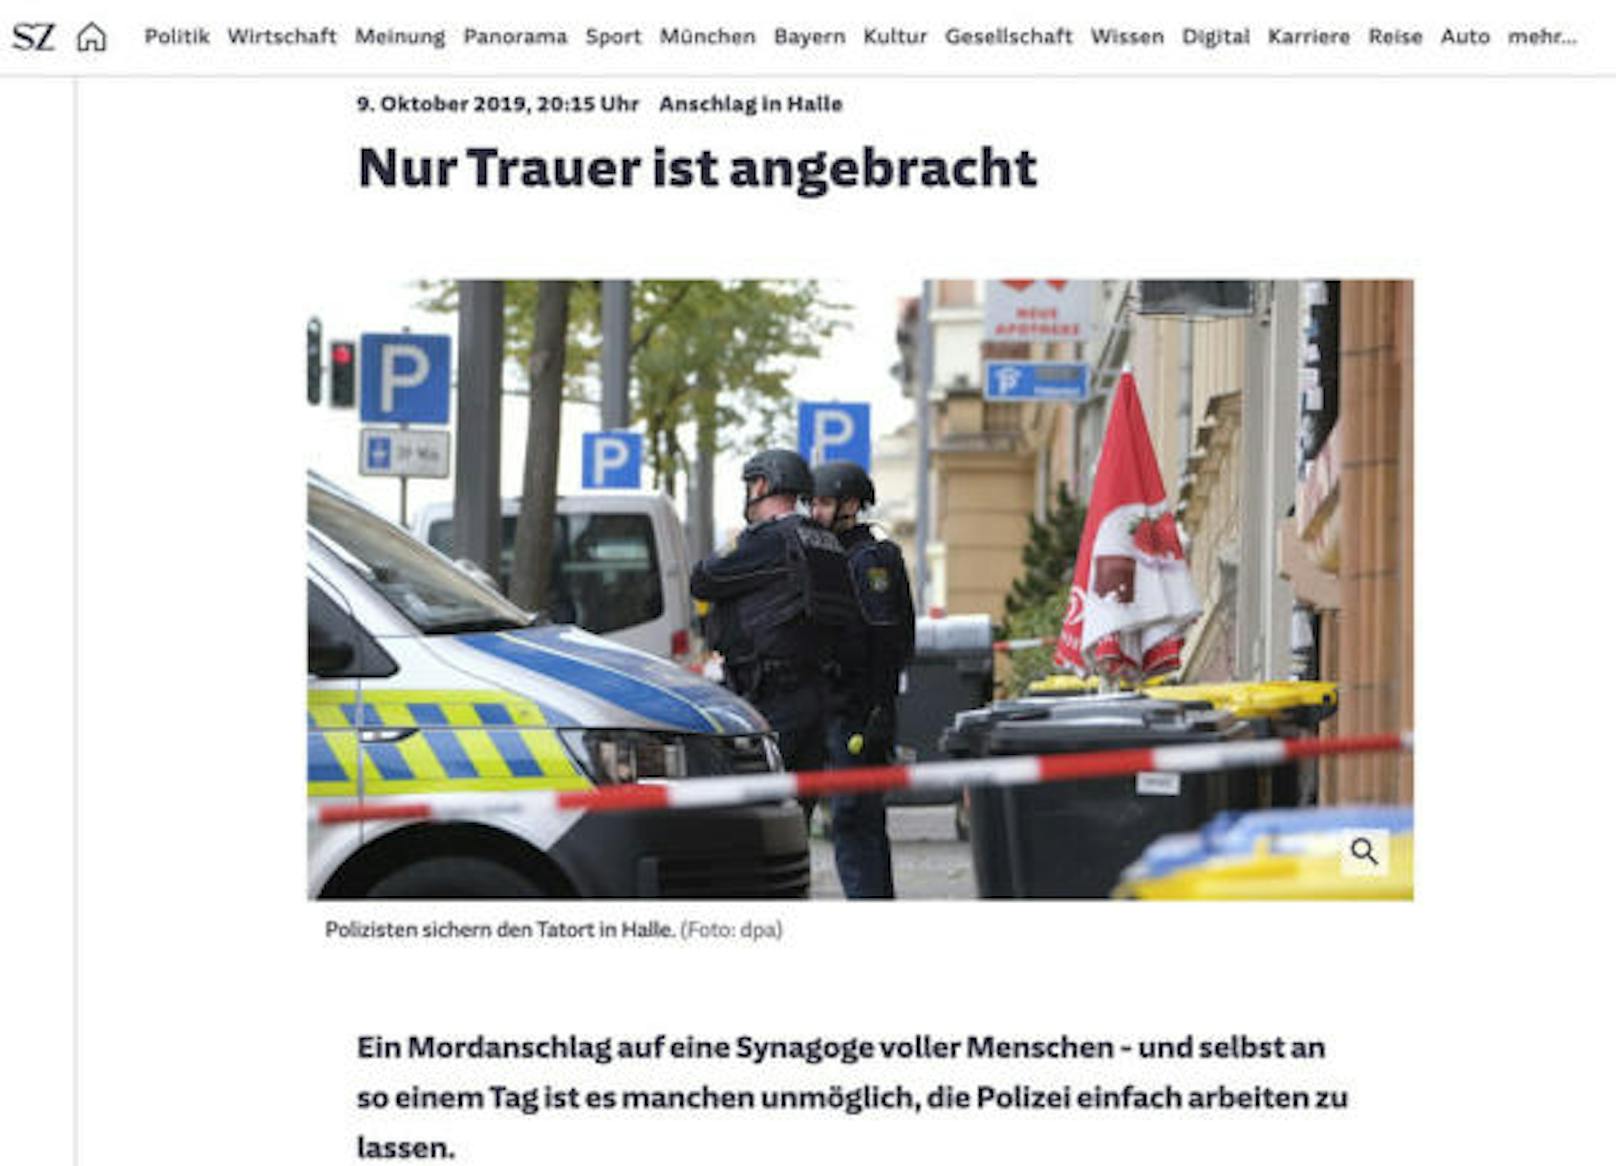 <b>"Nur Trauer ist angebracht"</b>
"Ein Mordanschlag auf eine Synagoge voller Menschen - und selbst an so einem Tag ist es manchen unmöglich, die Polizei einfach arbeiten zu lassen", meint die "Süddeutsche Zeitung", und spielt auf die "Pseudo-Informierer" im Netz an.